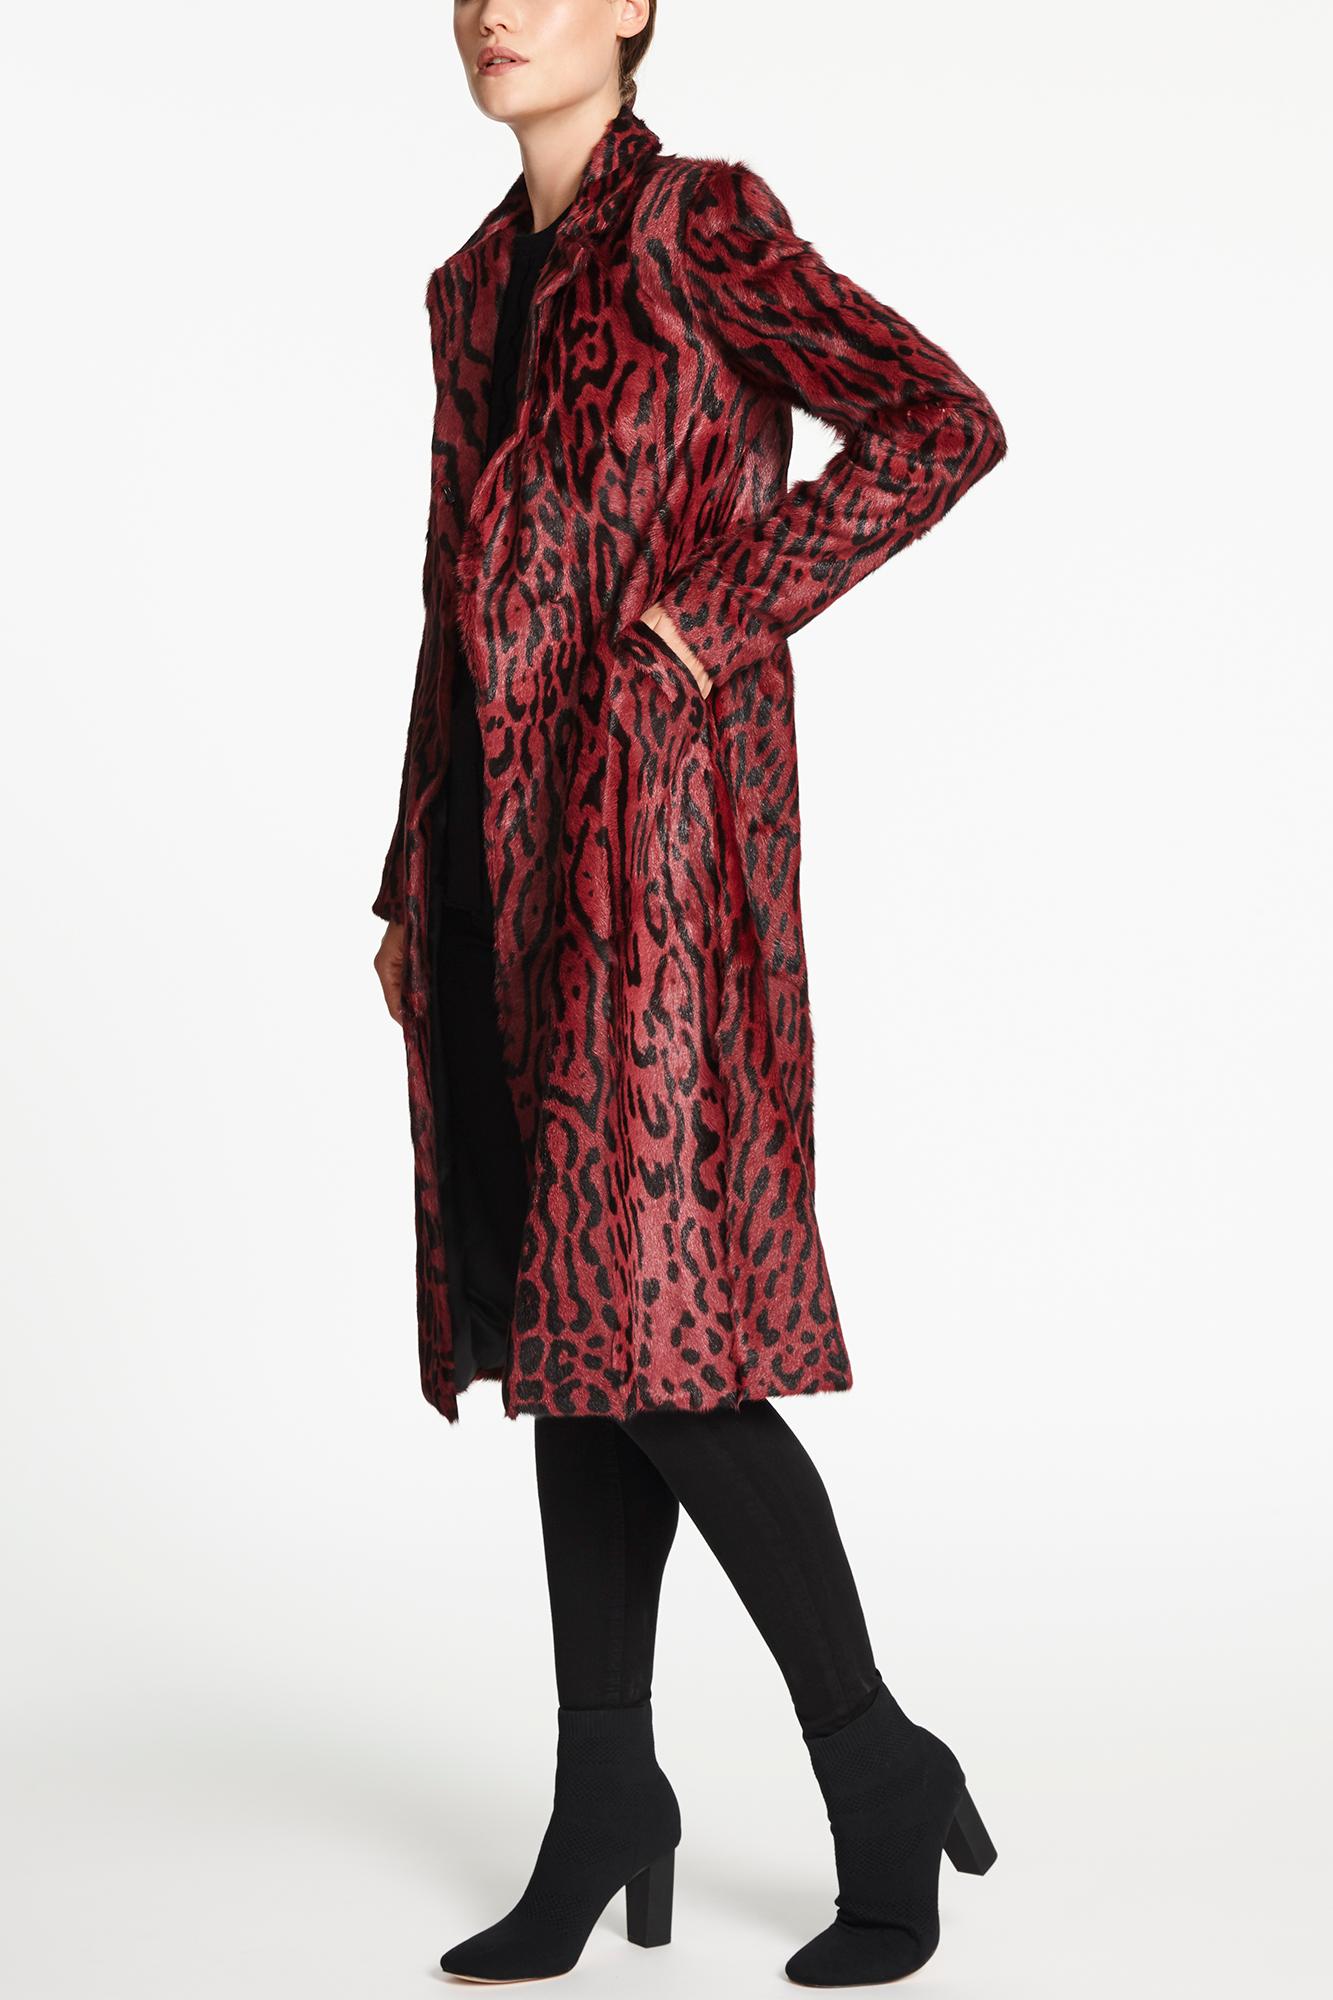 Women's Verheyen London Longline Leopard Print Coat in Ruby Red Goat Hair Fur